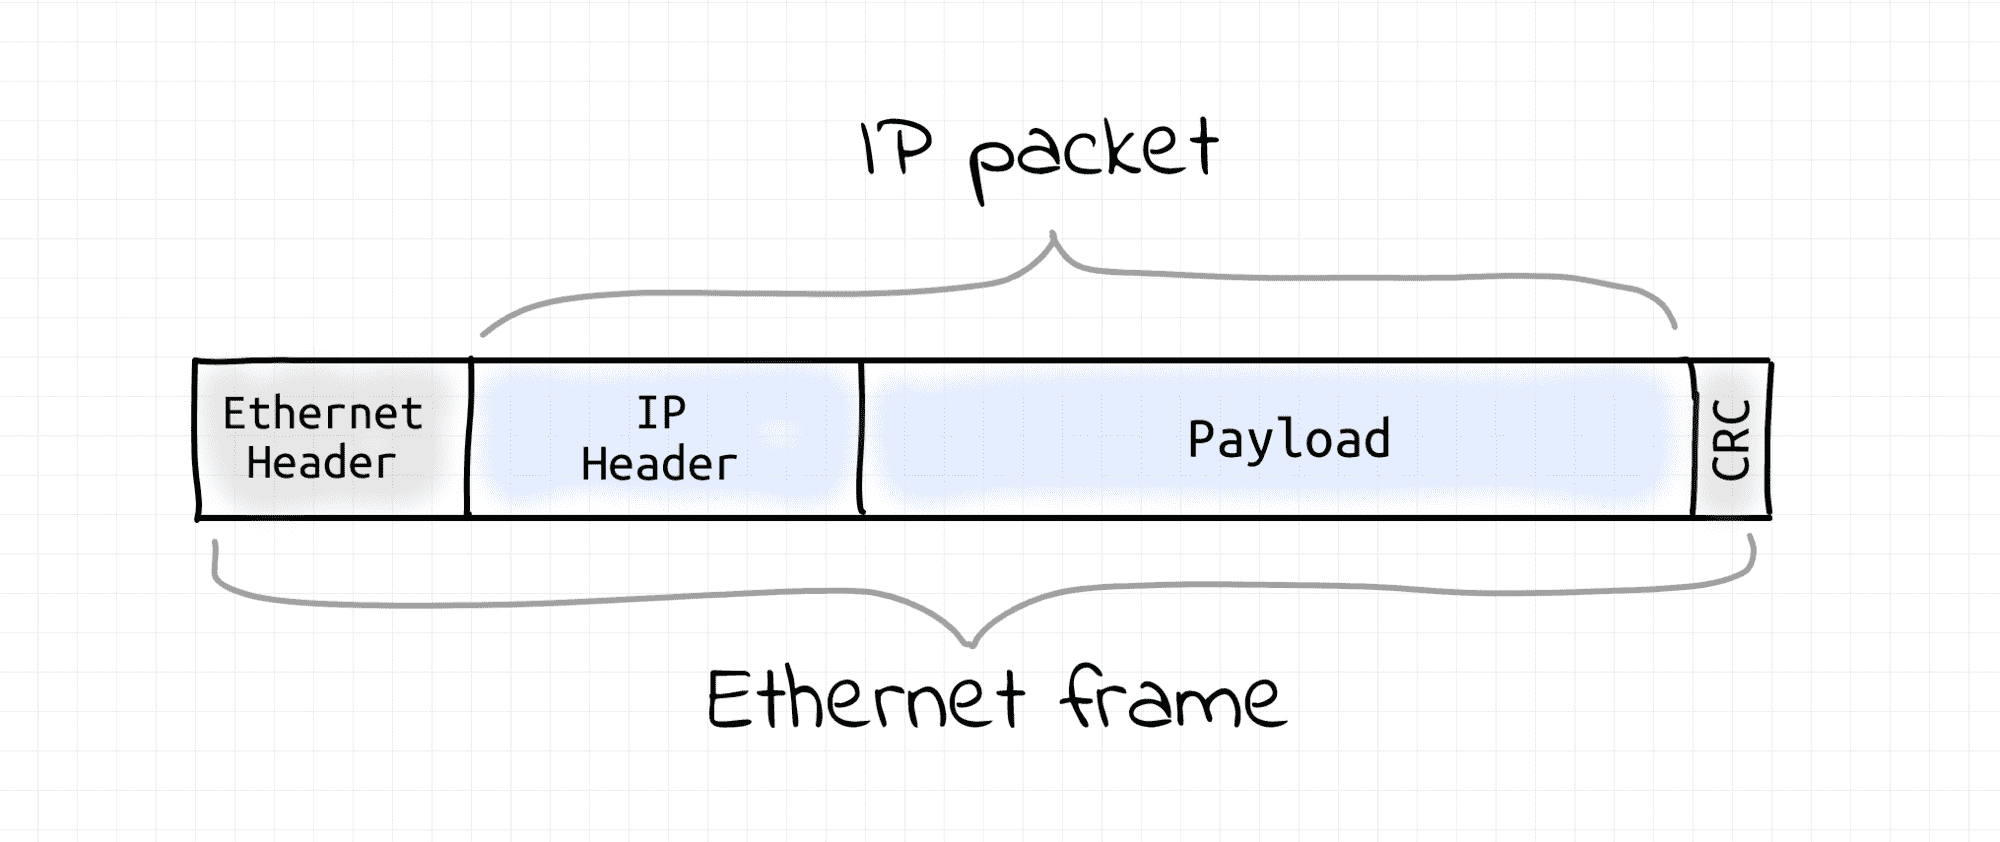 IP packet inside Ethernet frame